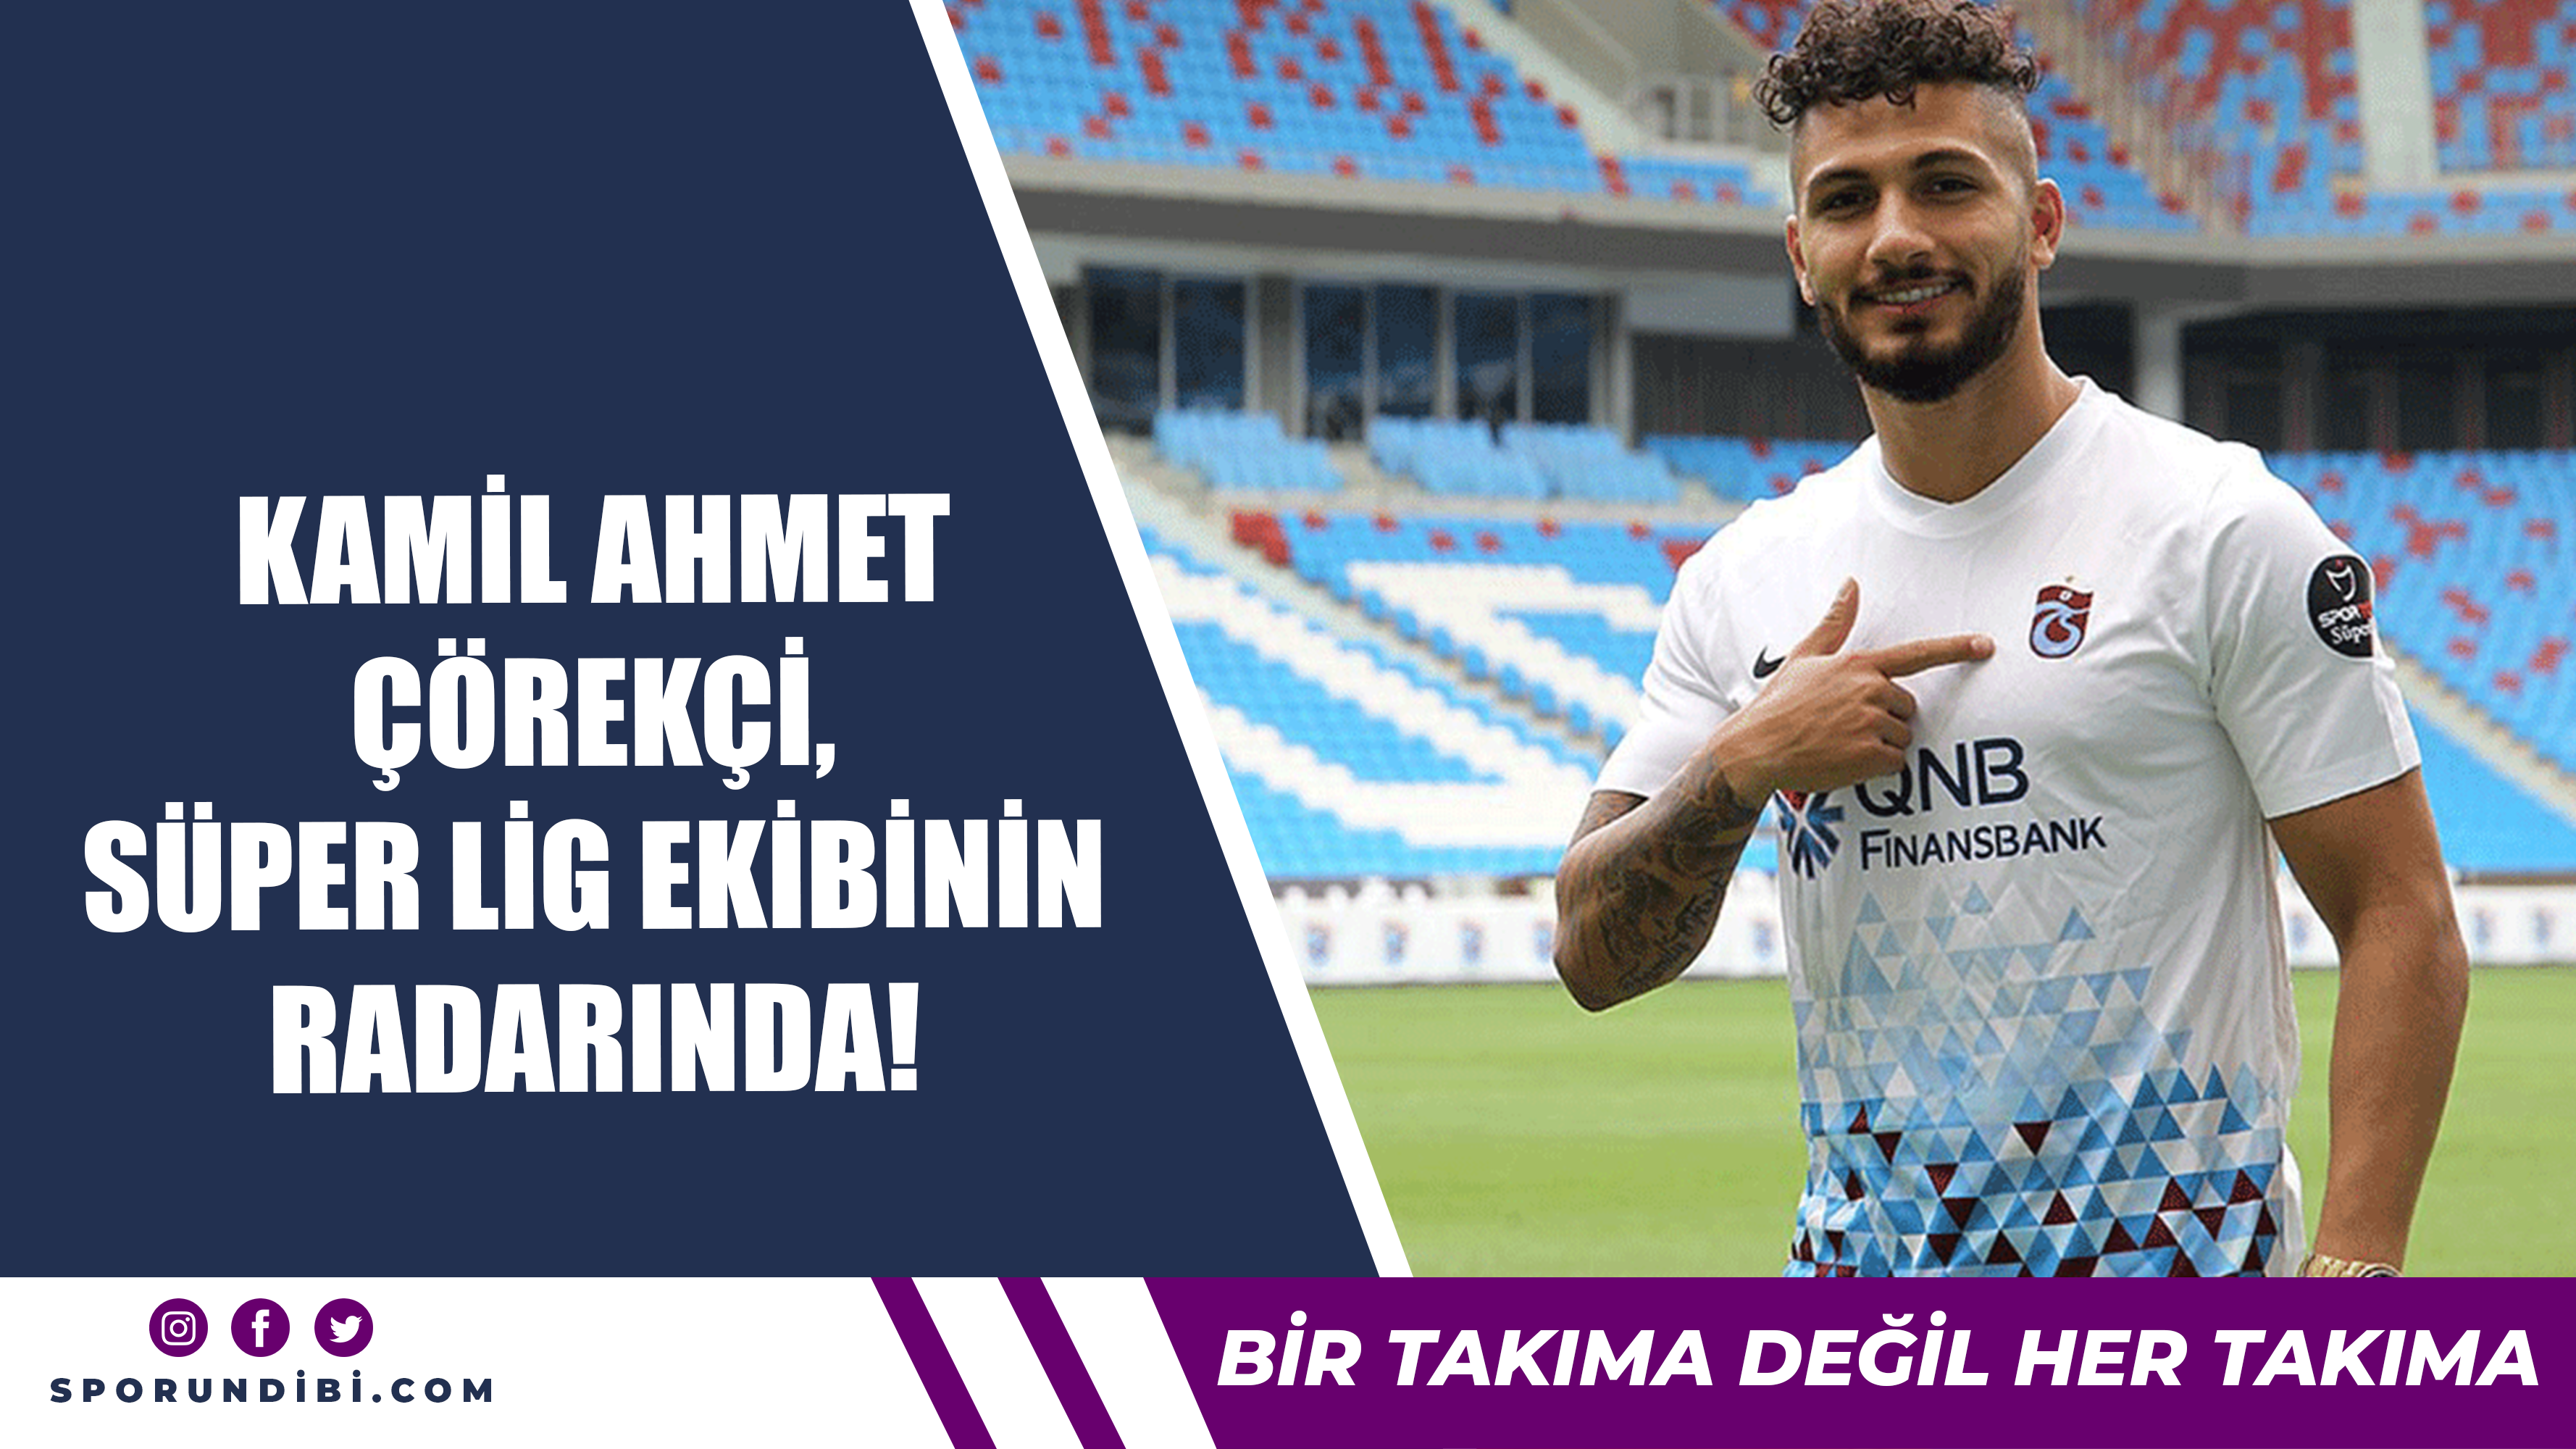 Kamil Ahmet Çörekçi, Süper Lig ekibinin radarında!